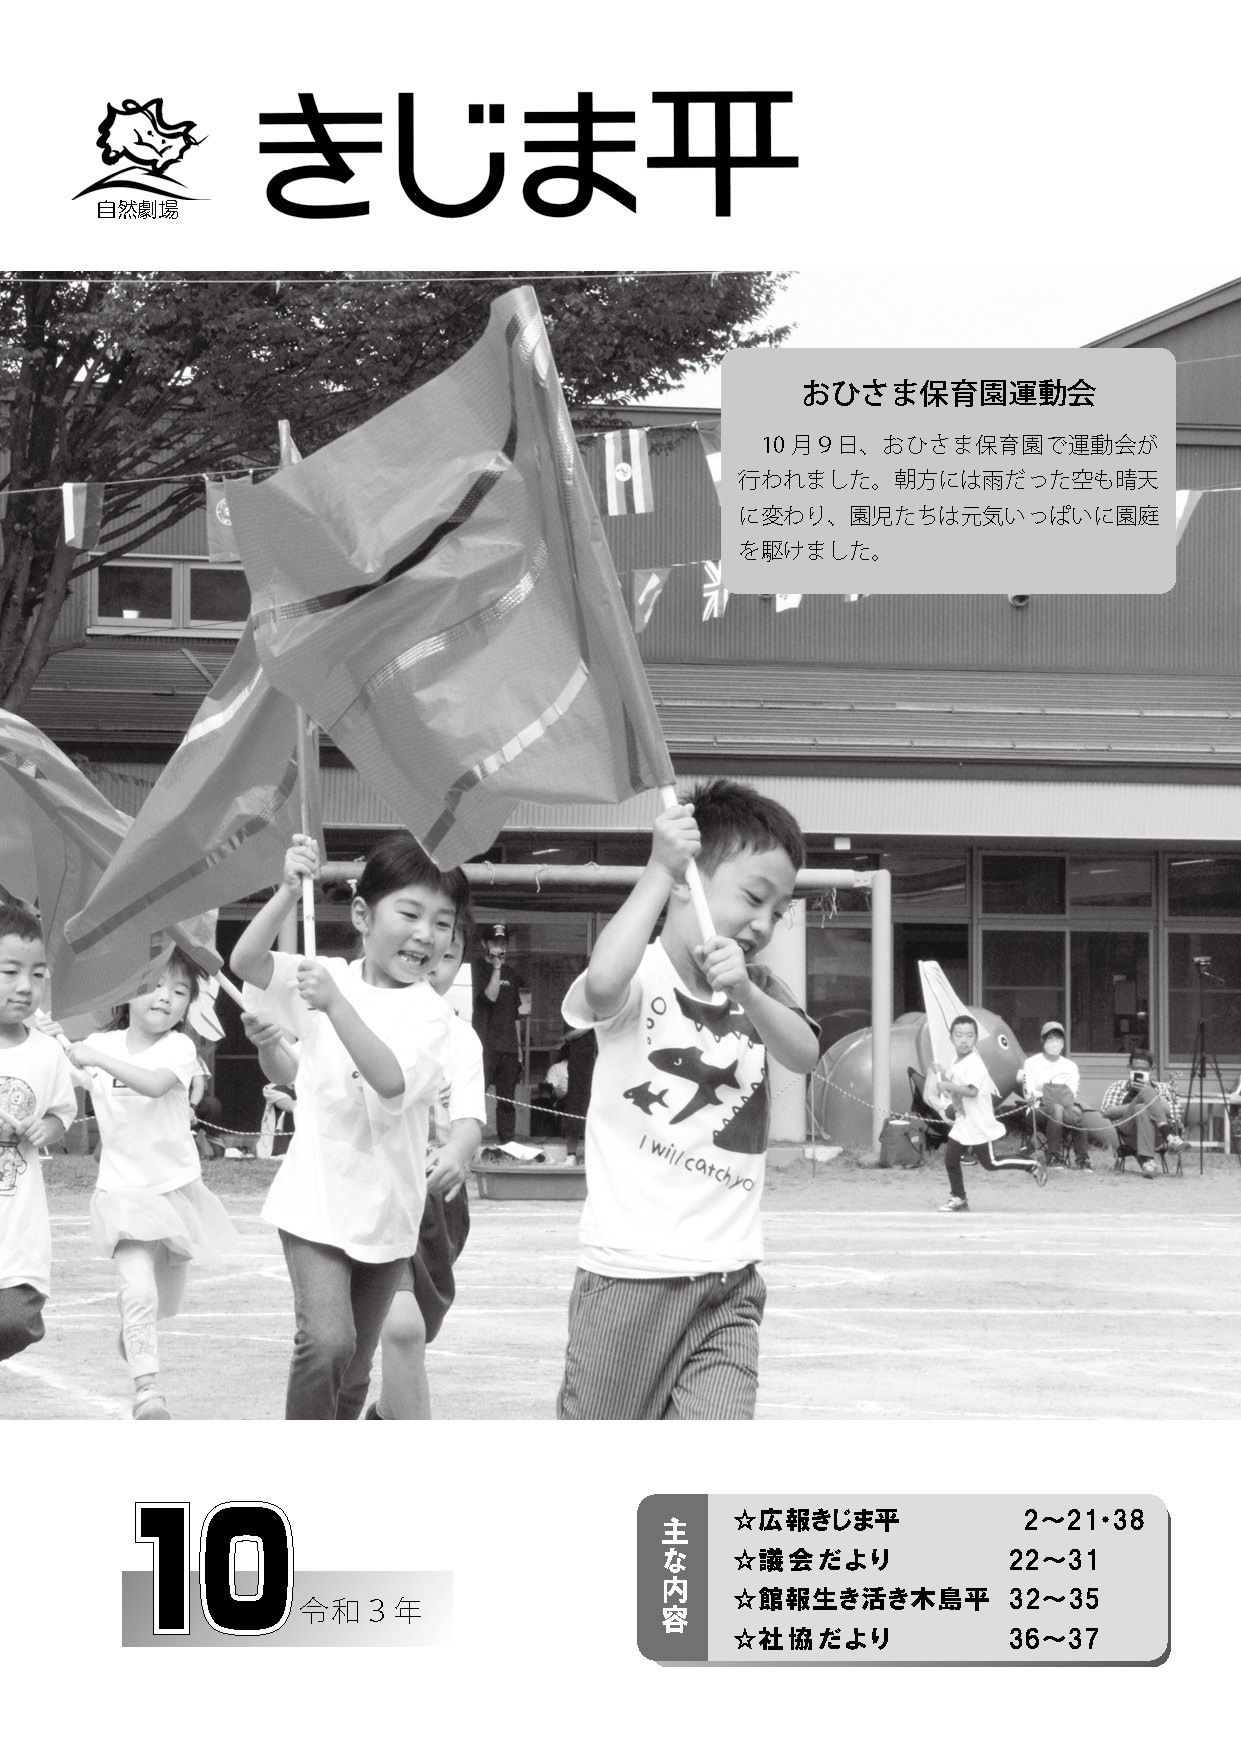 おひさま保育園の運動会で園児たちが旗を持って歩く様子